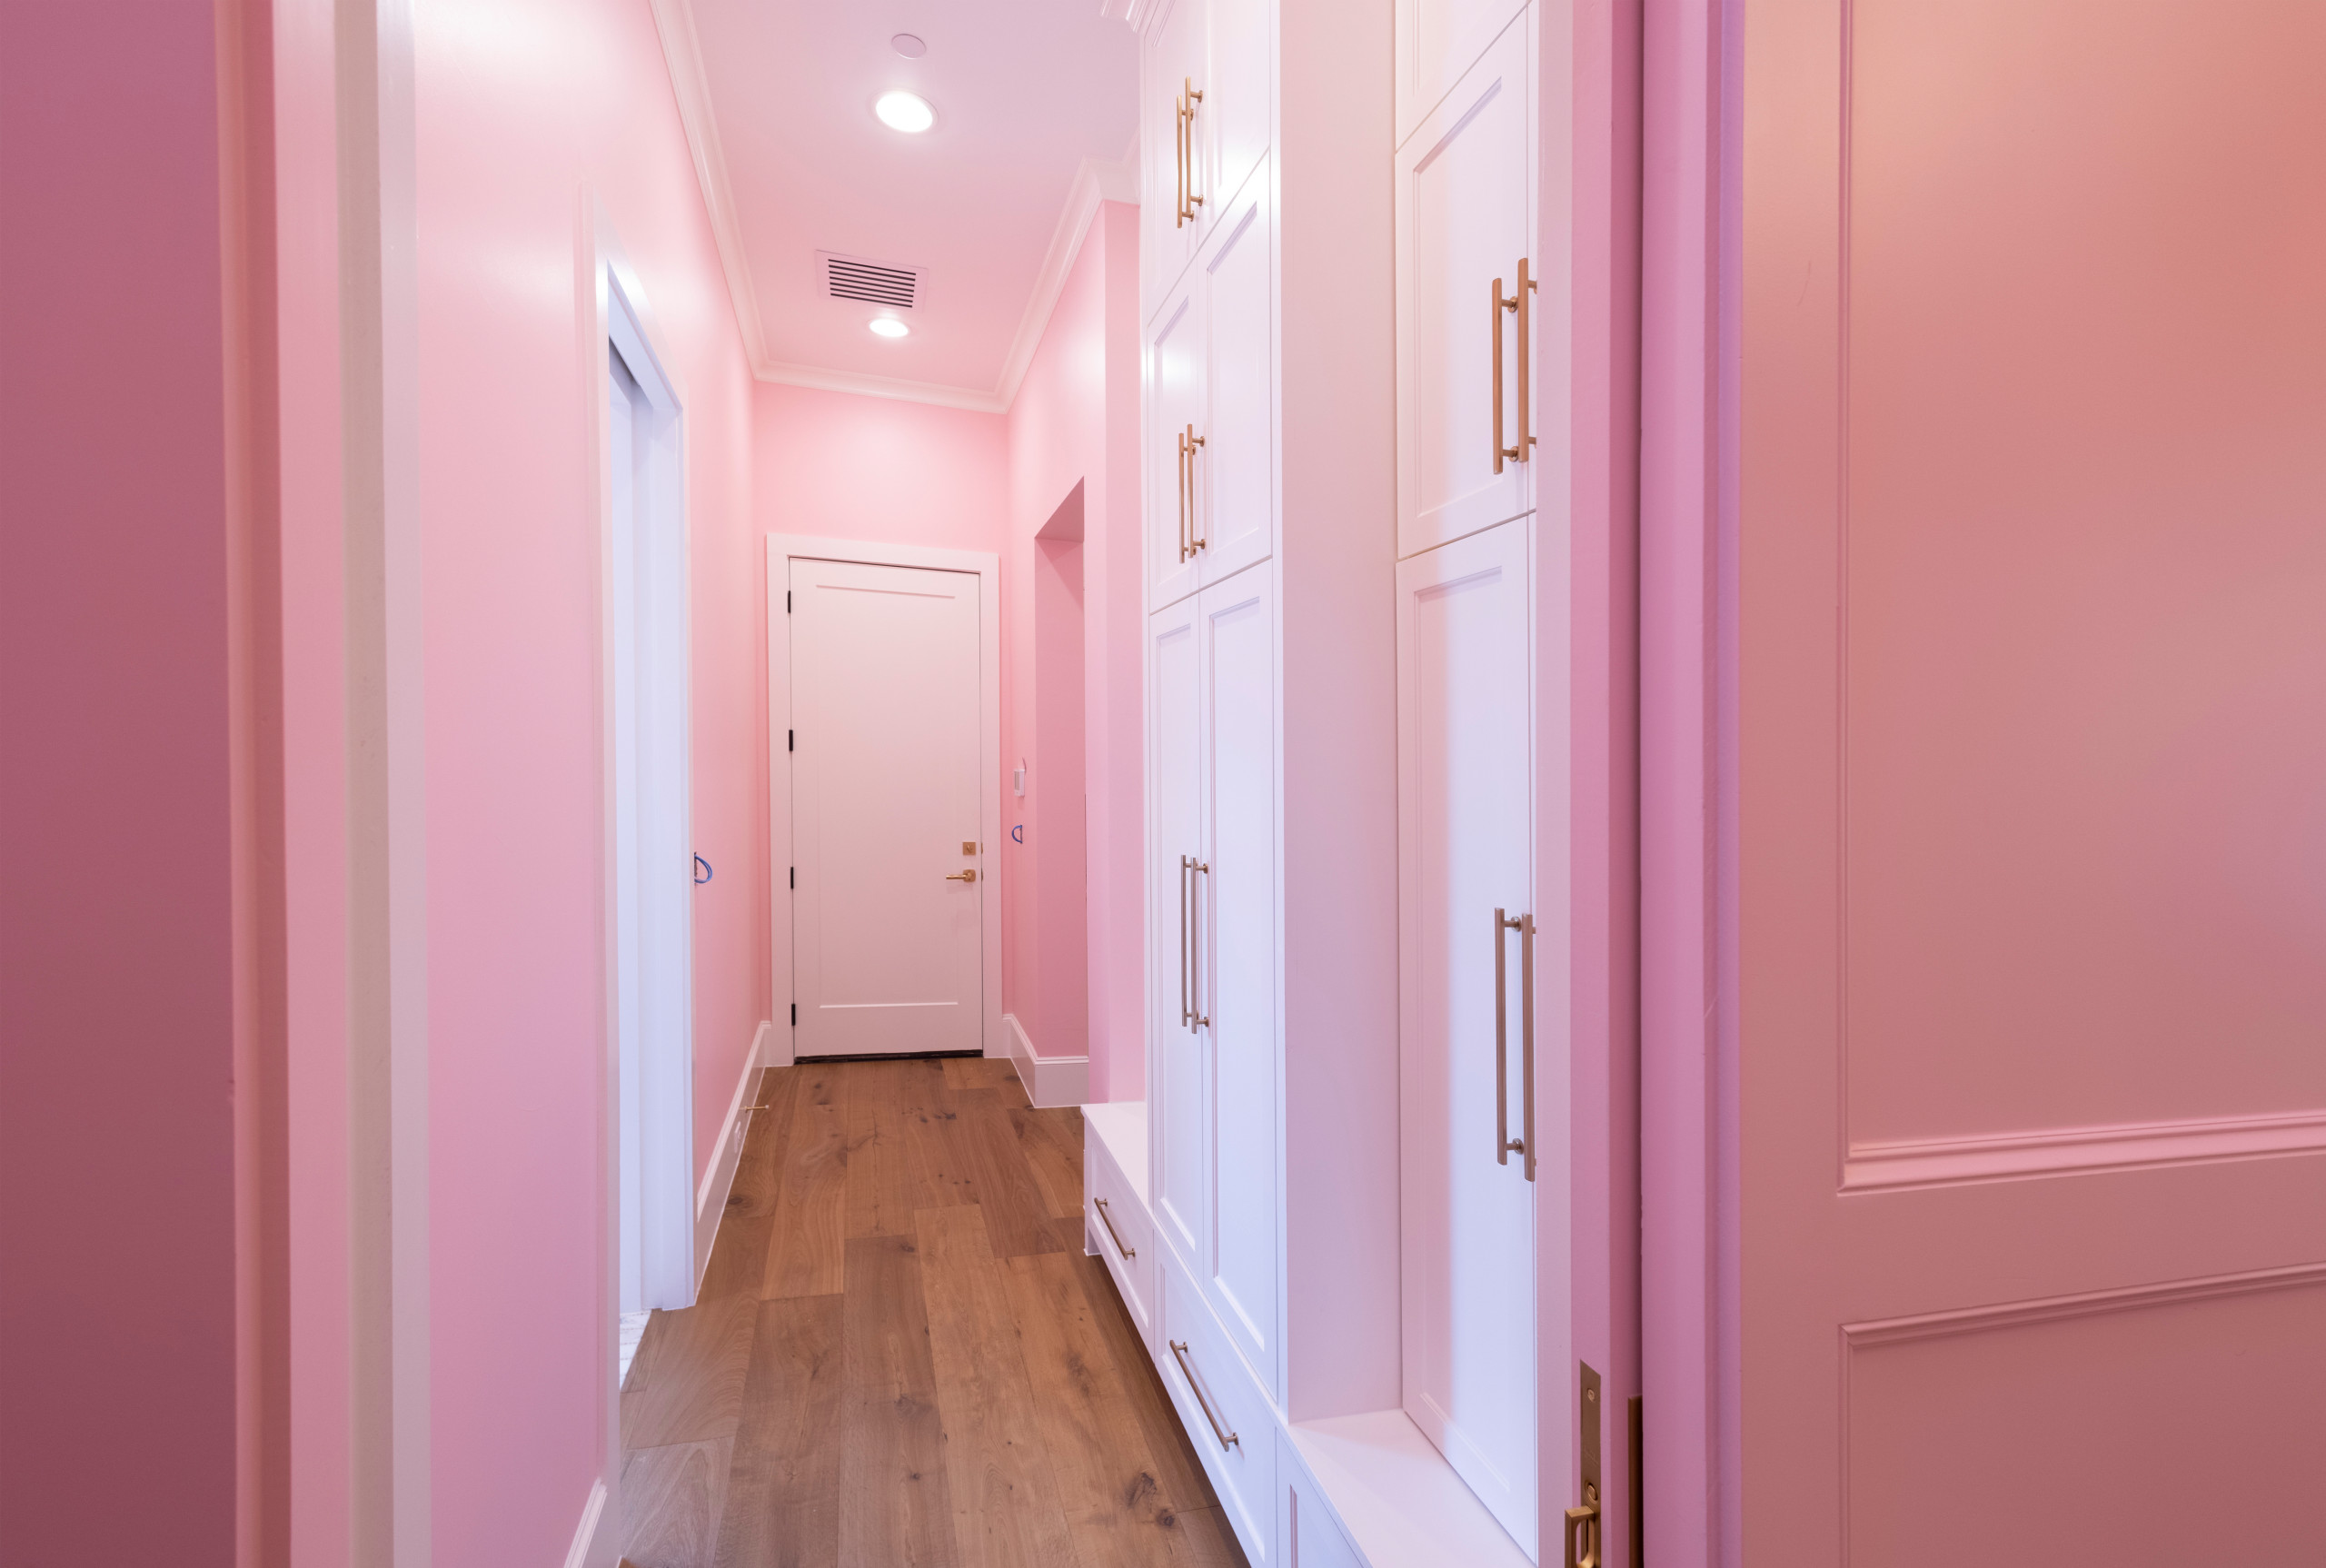 BFF Pink - Corridor Contemporary